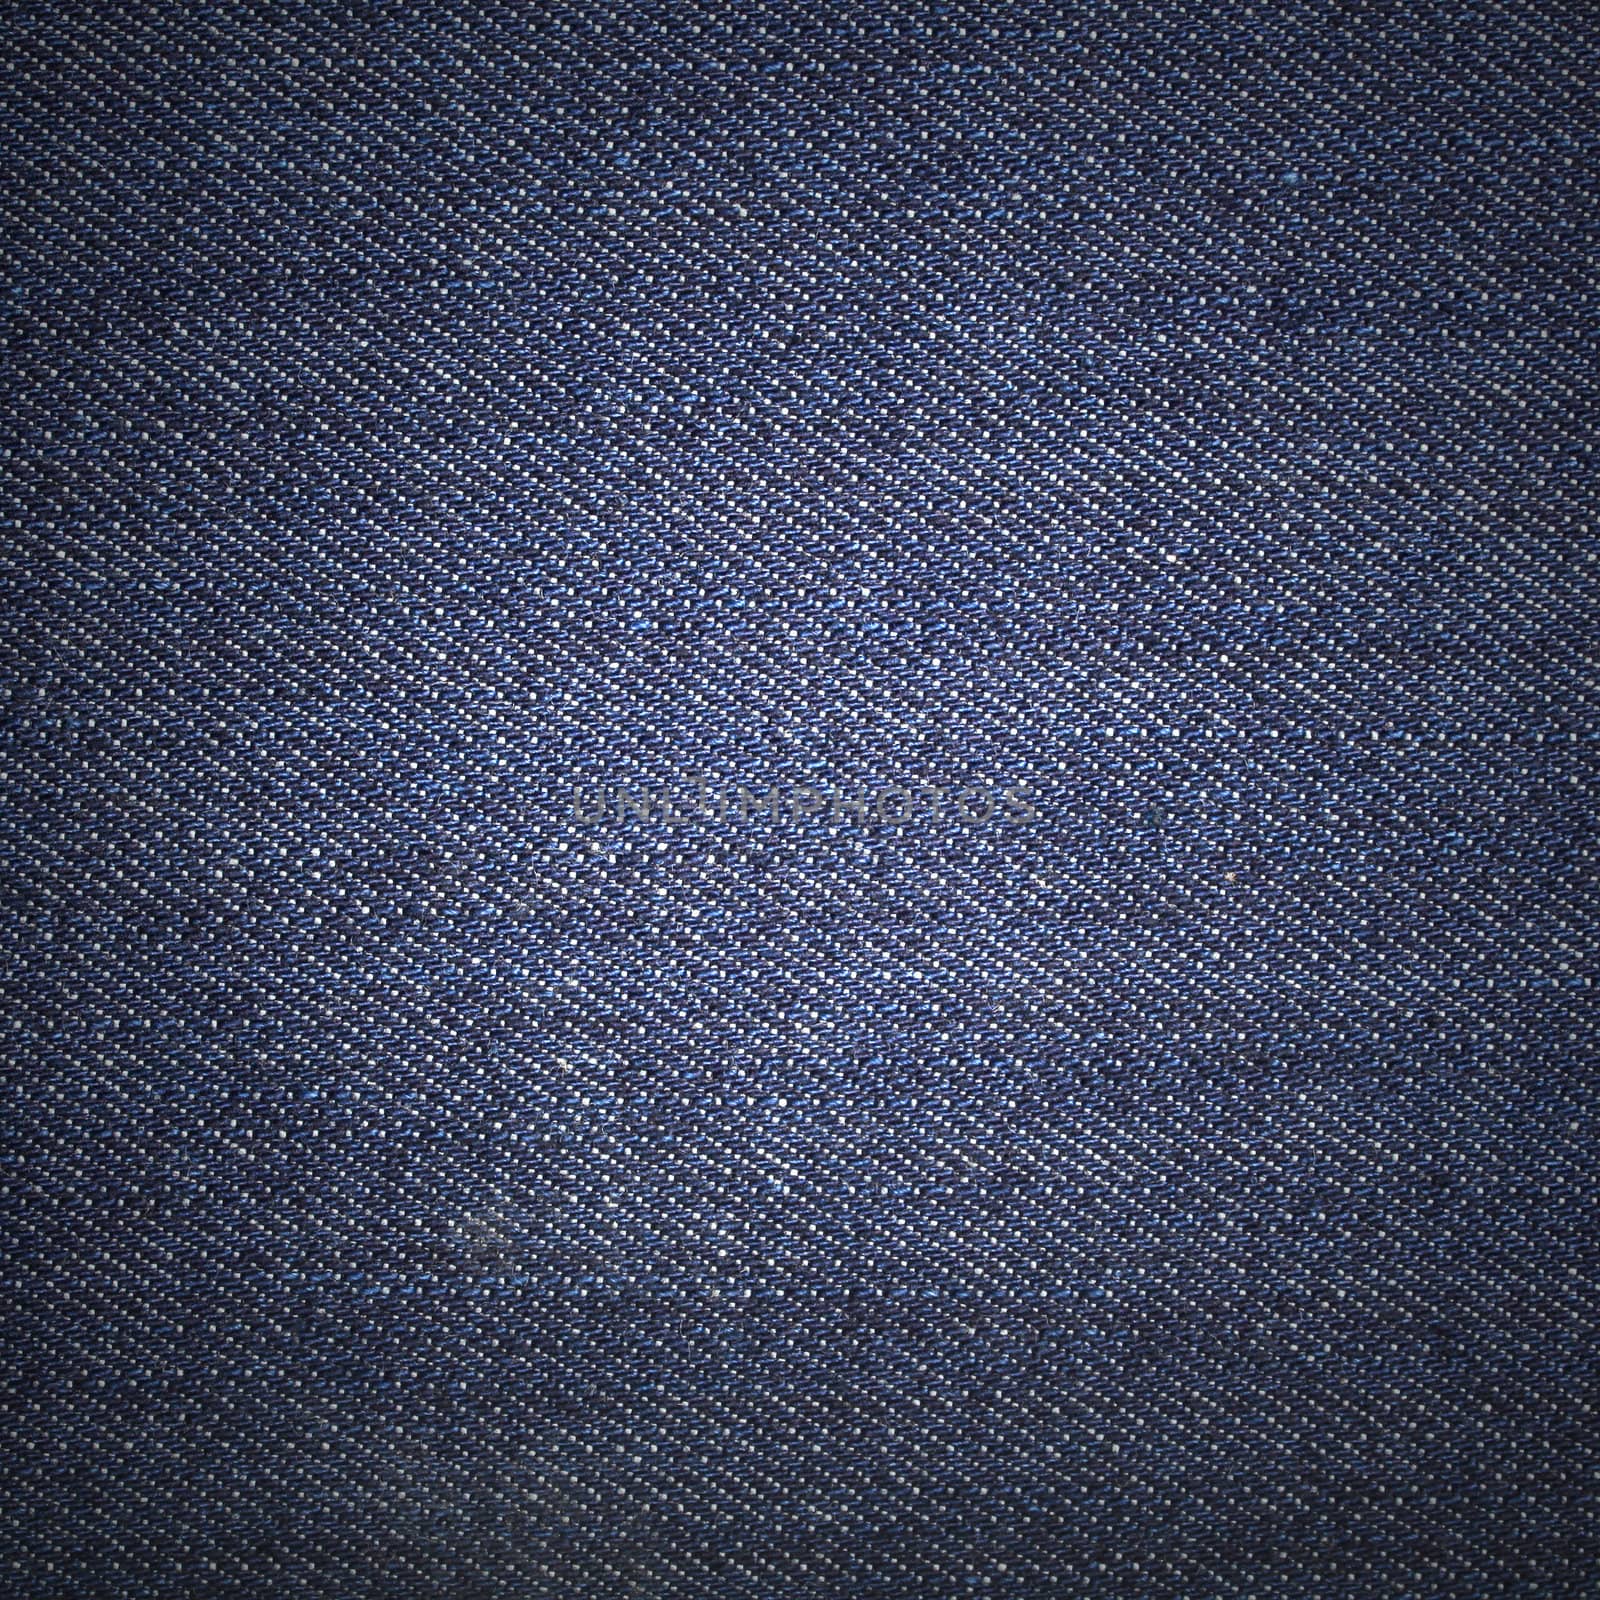 Texture of blue jeans textile close up
